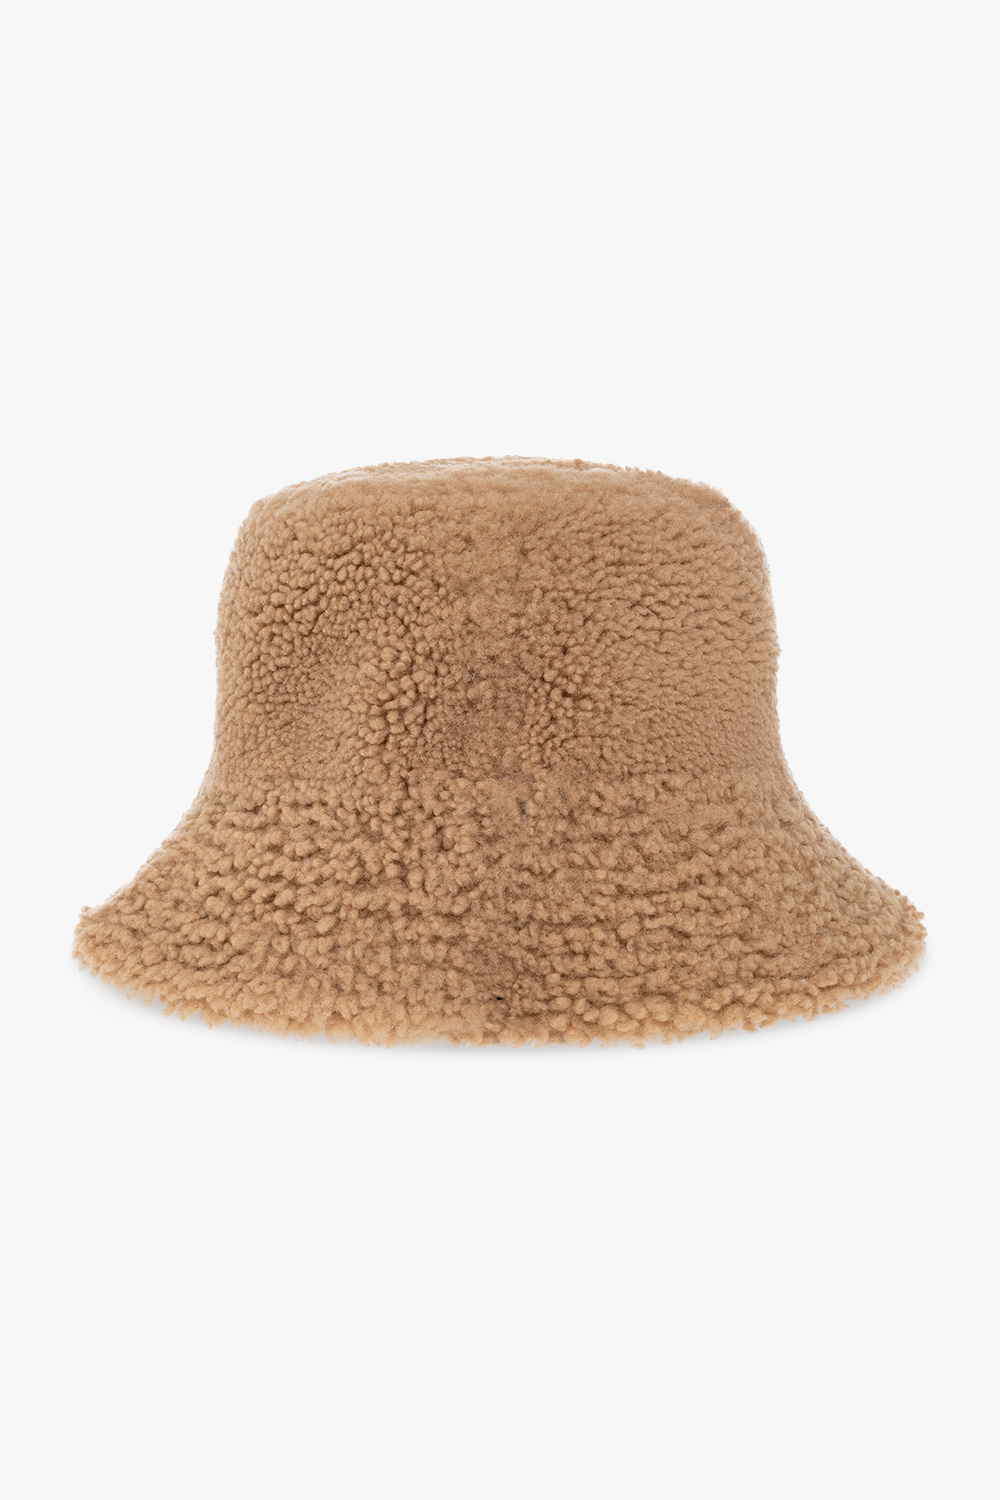 LV First Bucket Hat S00 - Women - Accessories